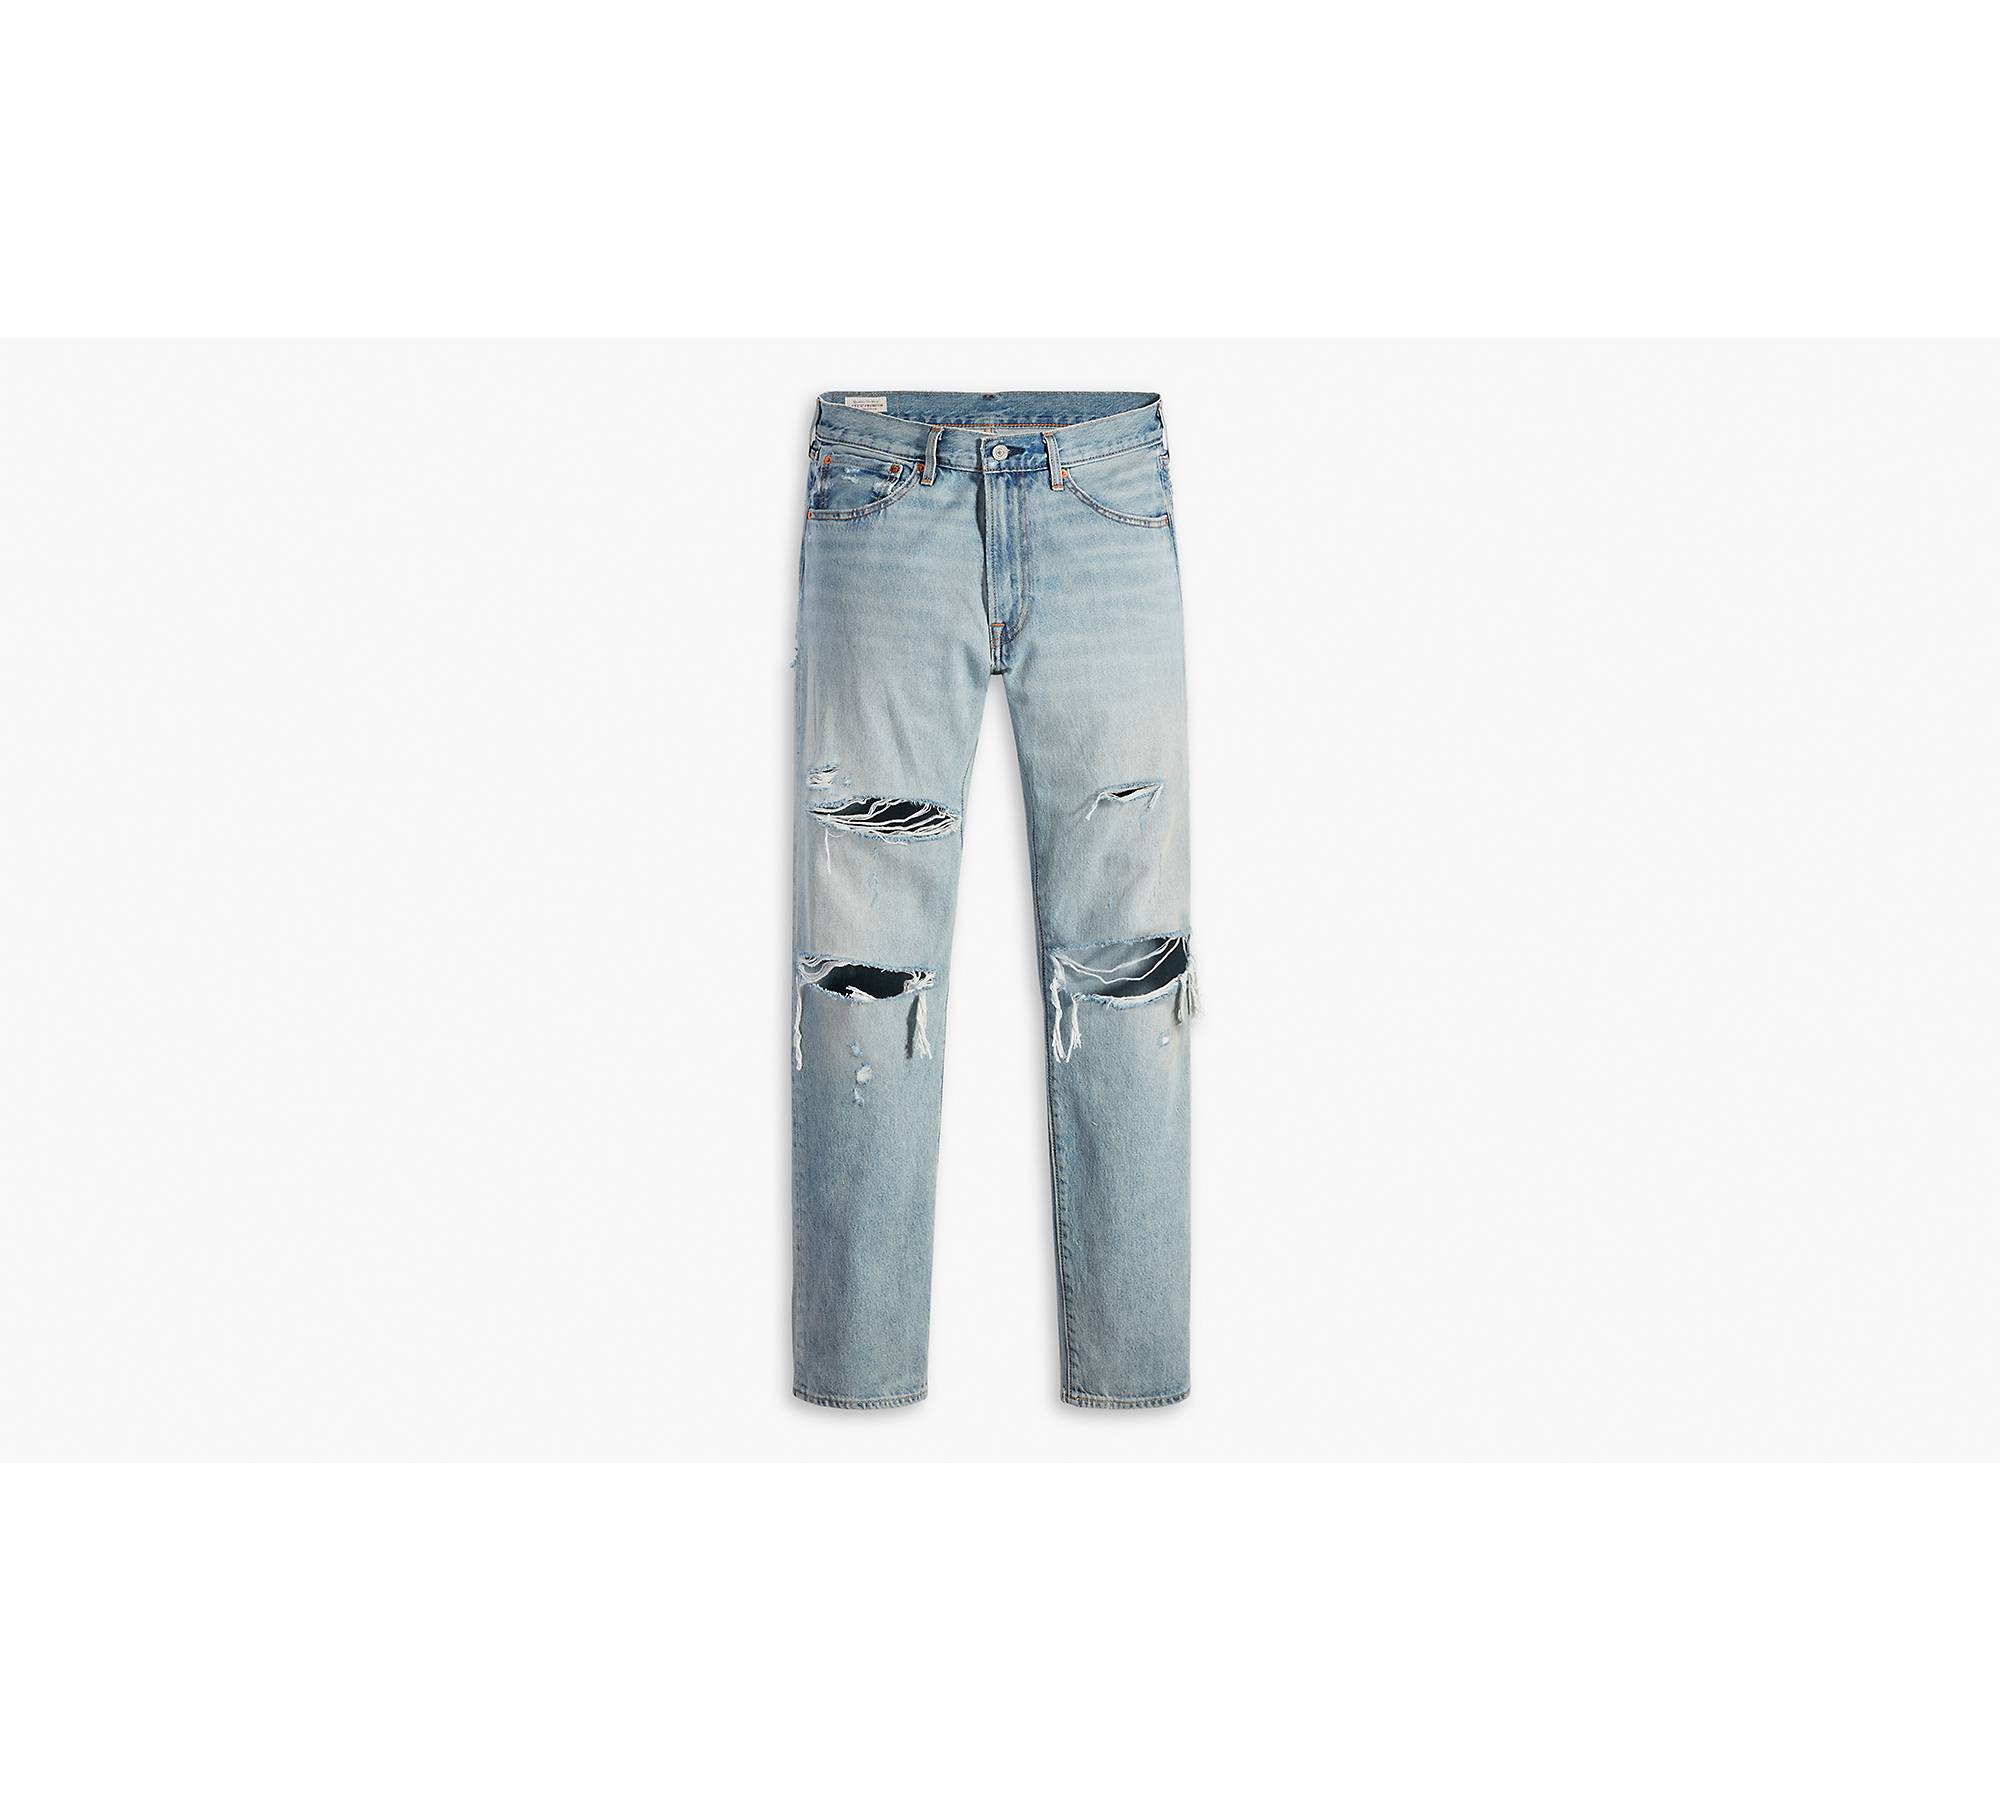 551™ Z Authentic Straight Fit Men's Jeans - Light Wash